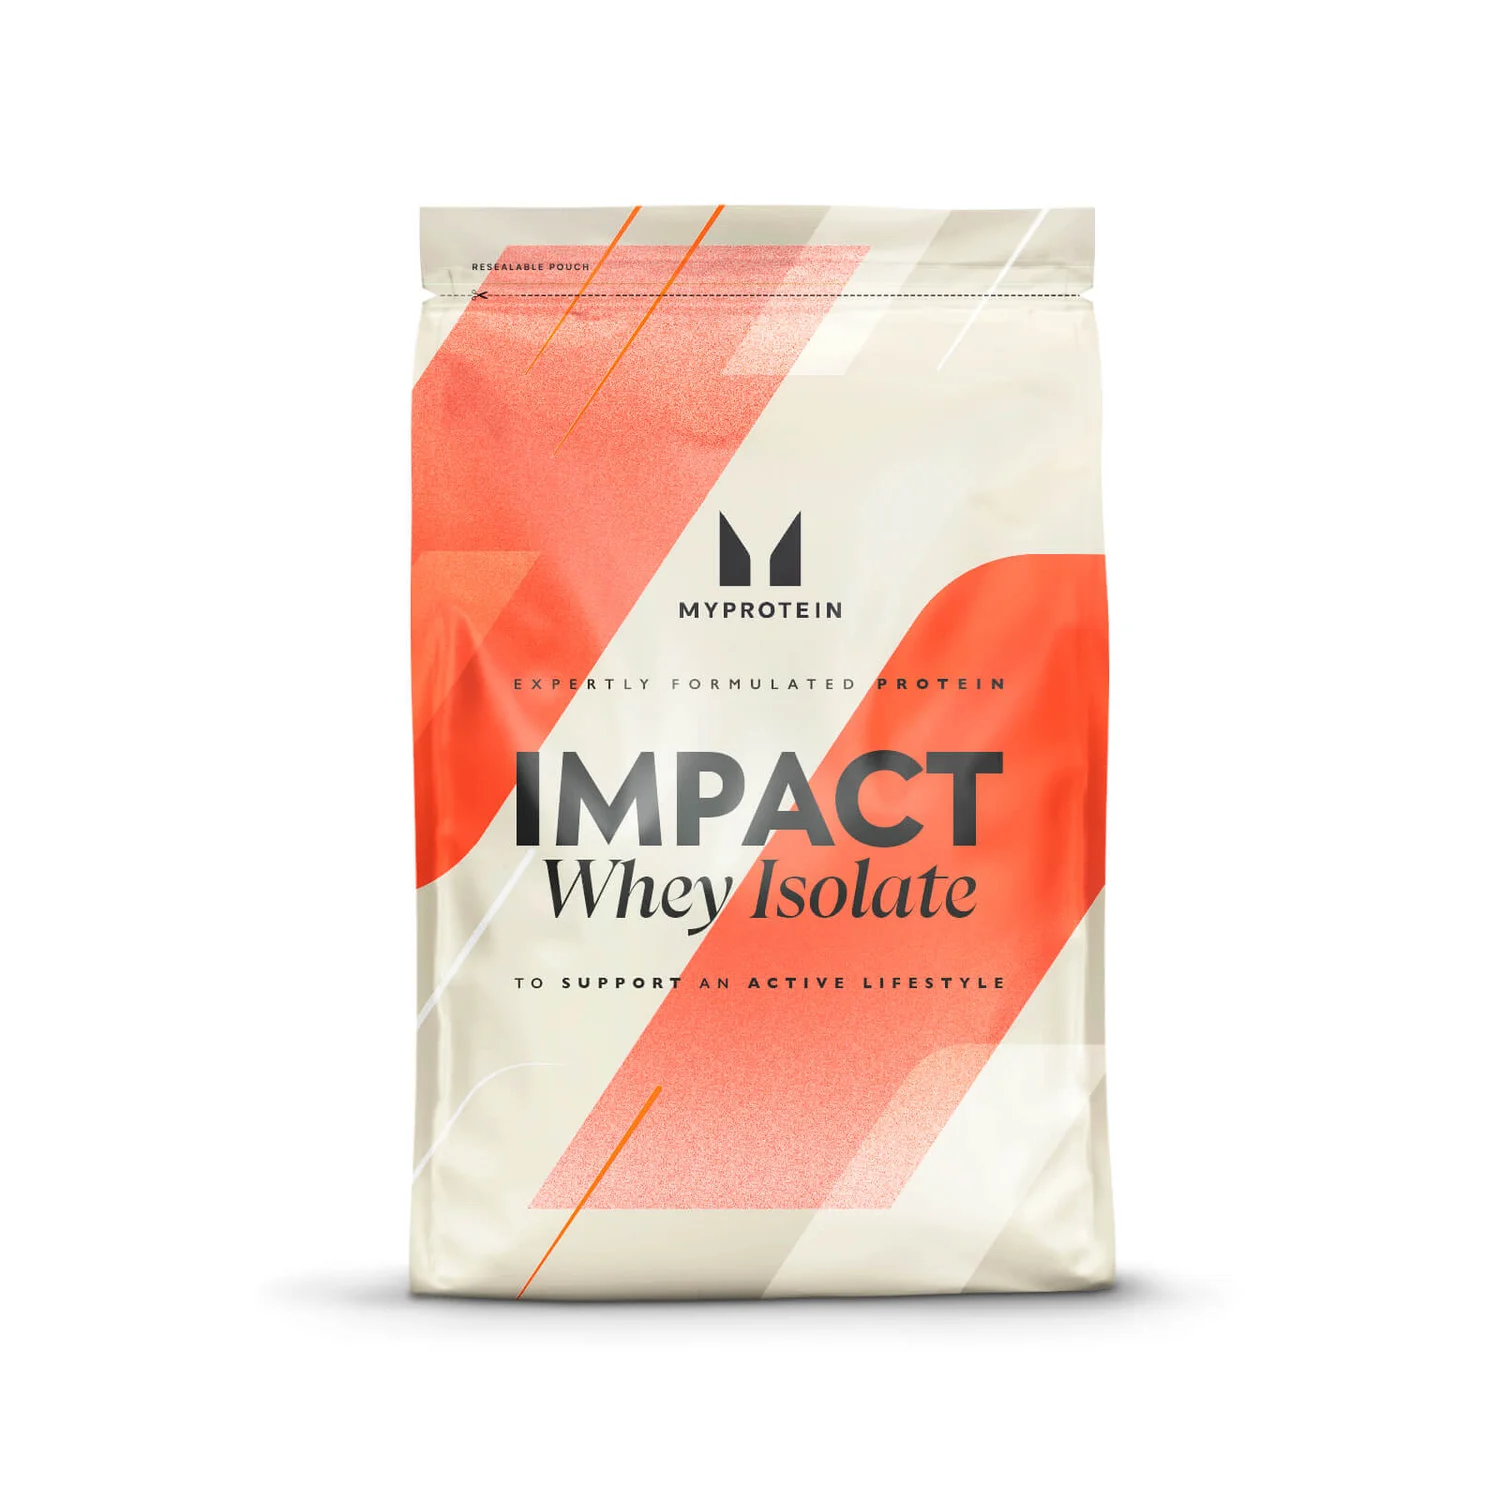 MYPROTEIN Impact Whey Isolate Powder - 2.5kg - Unflavoured